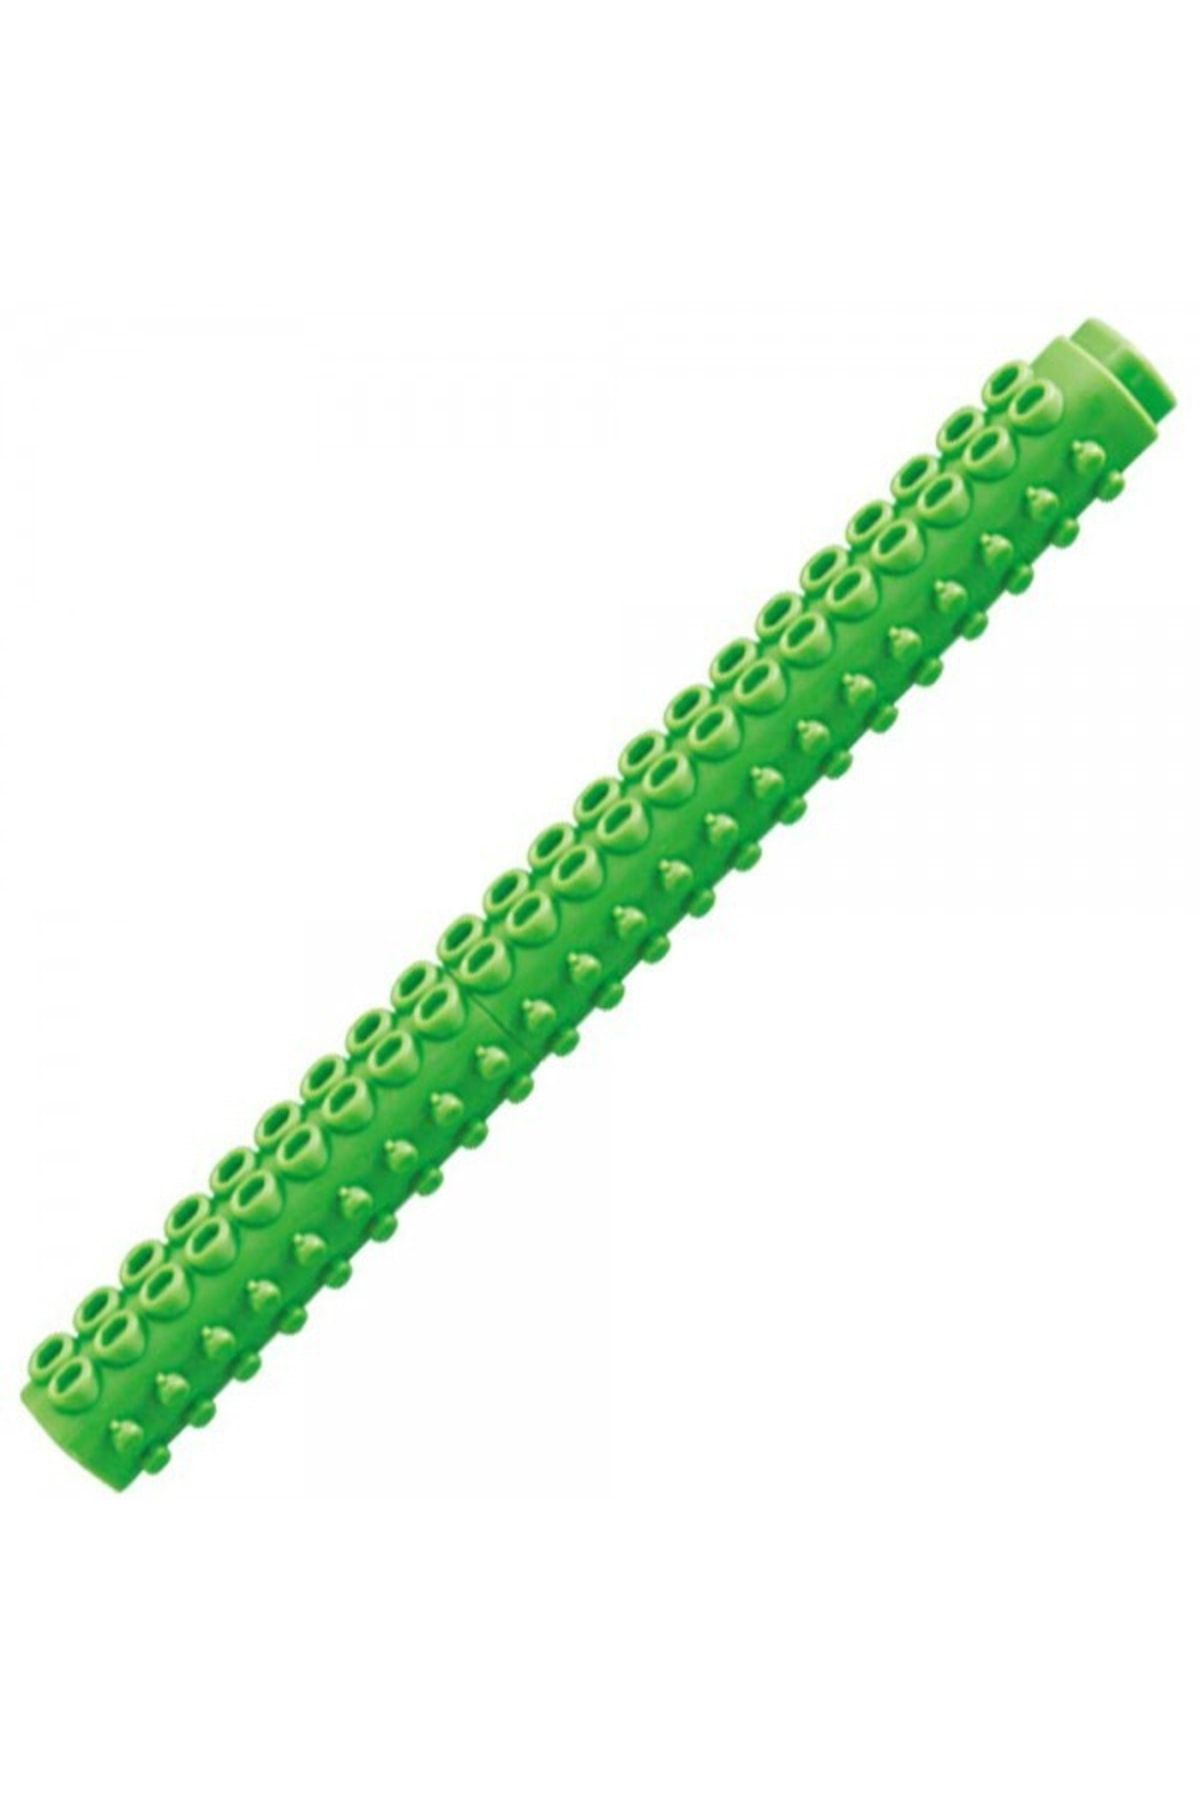 artline : Stix Brush Marker Fırça Uçlu Keçeli Kalem : Fıstık Yeşili